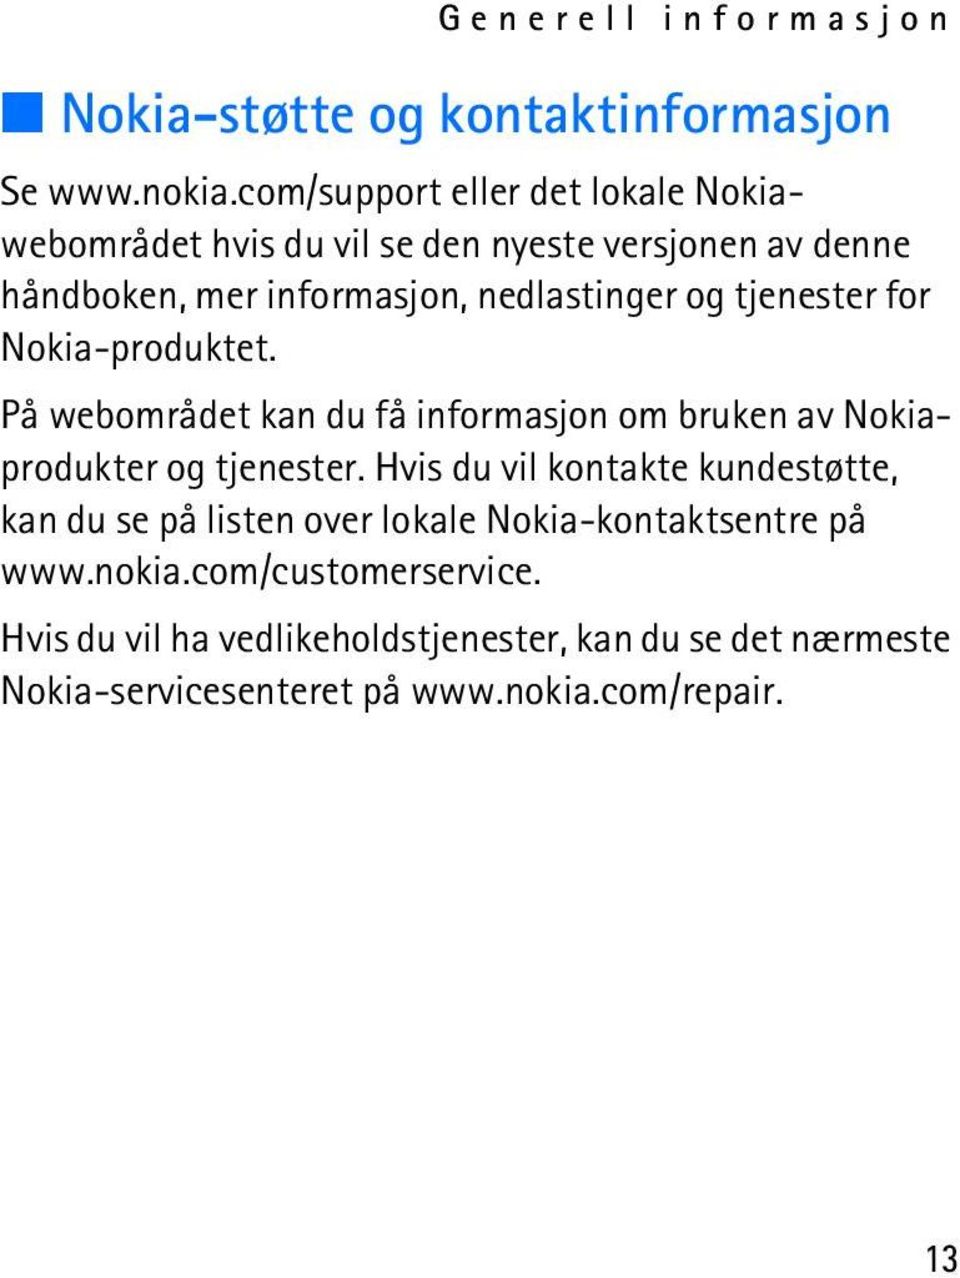 tjenester for Nokia-produktet. På webområdet kan du få informasjon om bruken av Nokiaprodukter og tjenester.